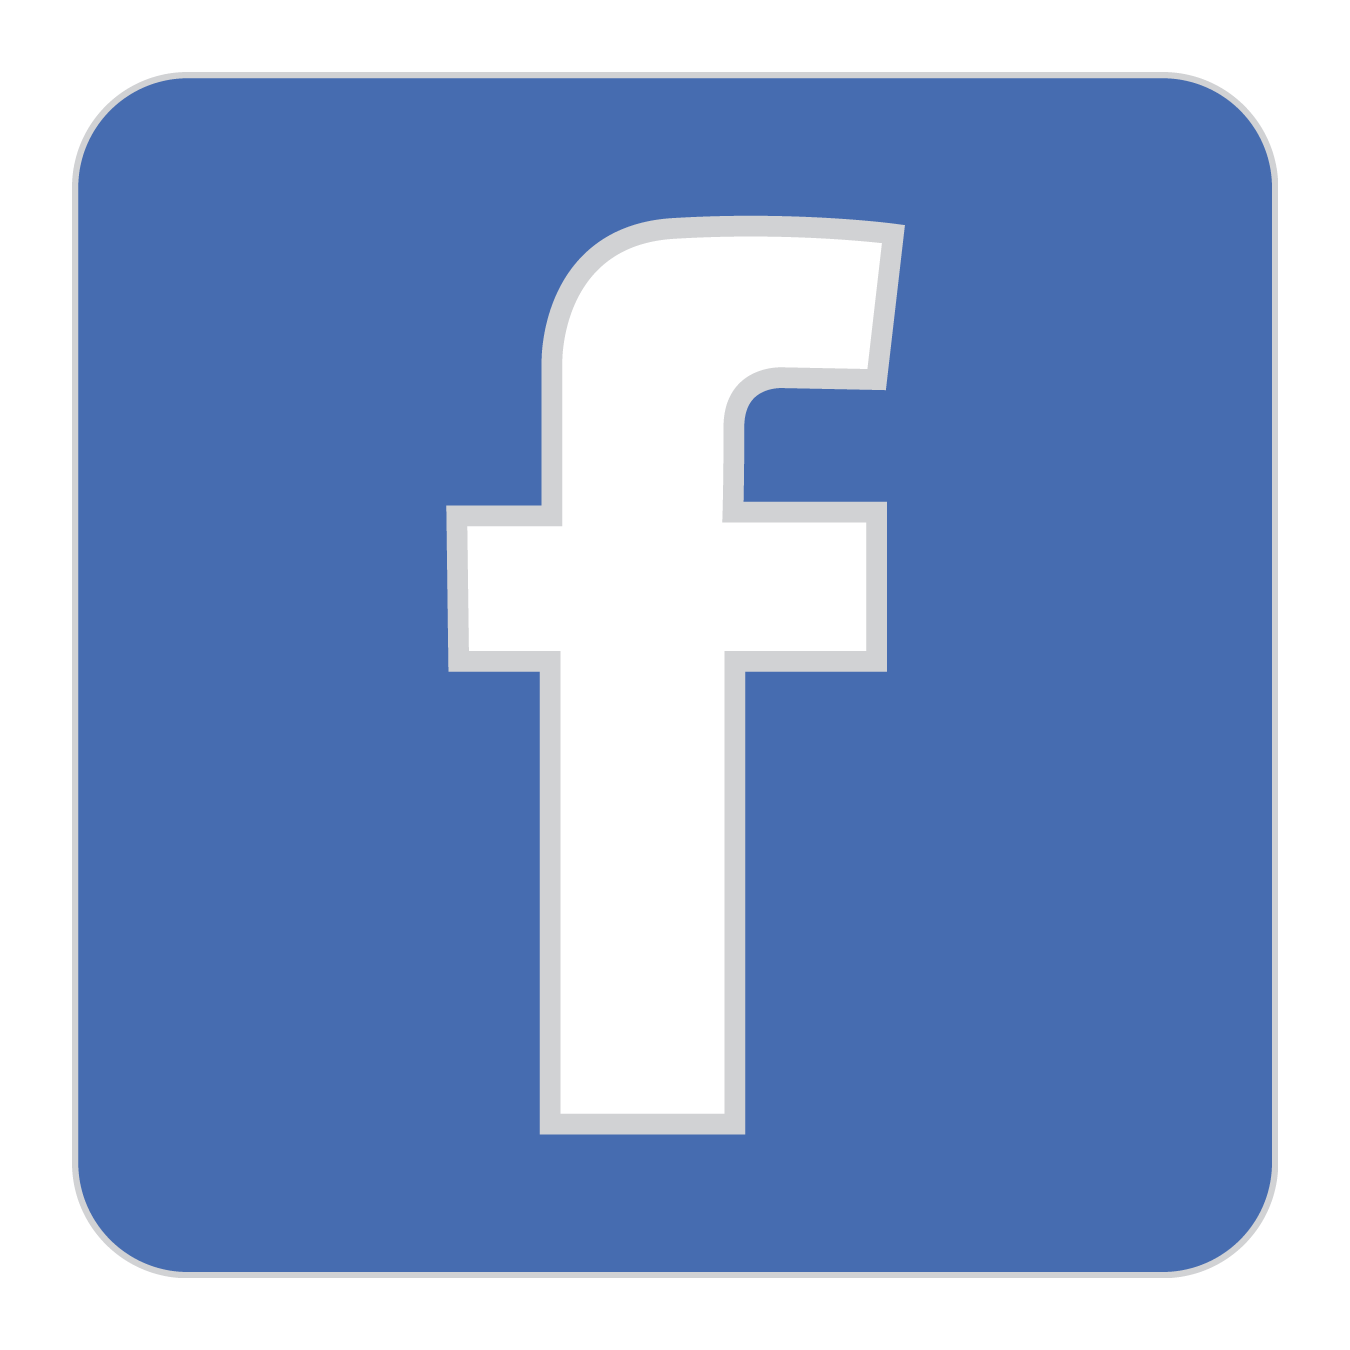 Https facebook com story php. Фейсбук. Facebook логотип. Новый значок Фейсбук. Икона Фейсбук.